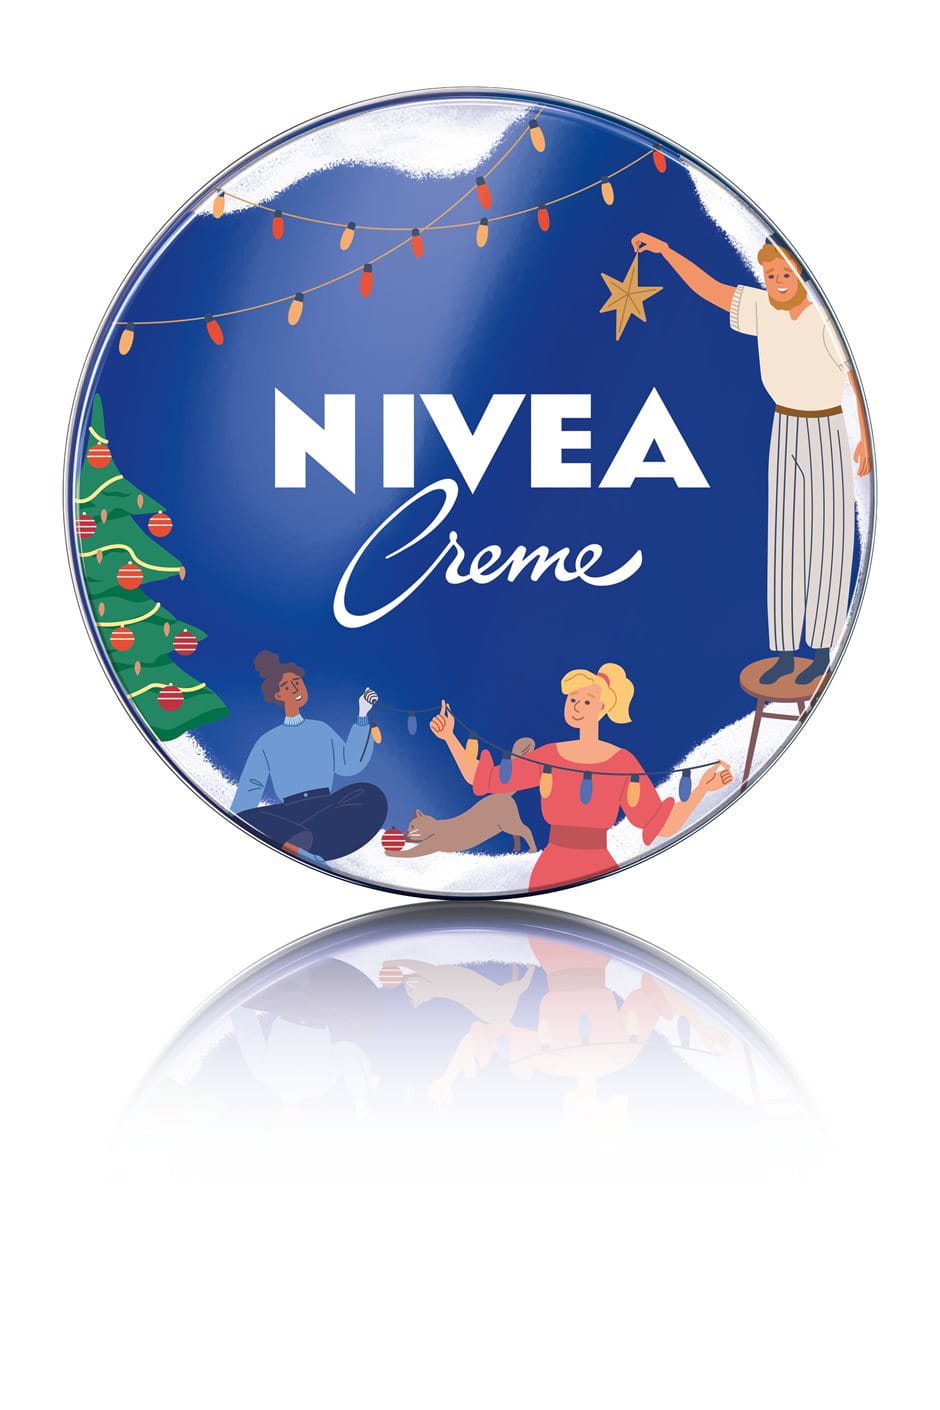 NIVEA Creme Christmas Limited Edition